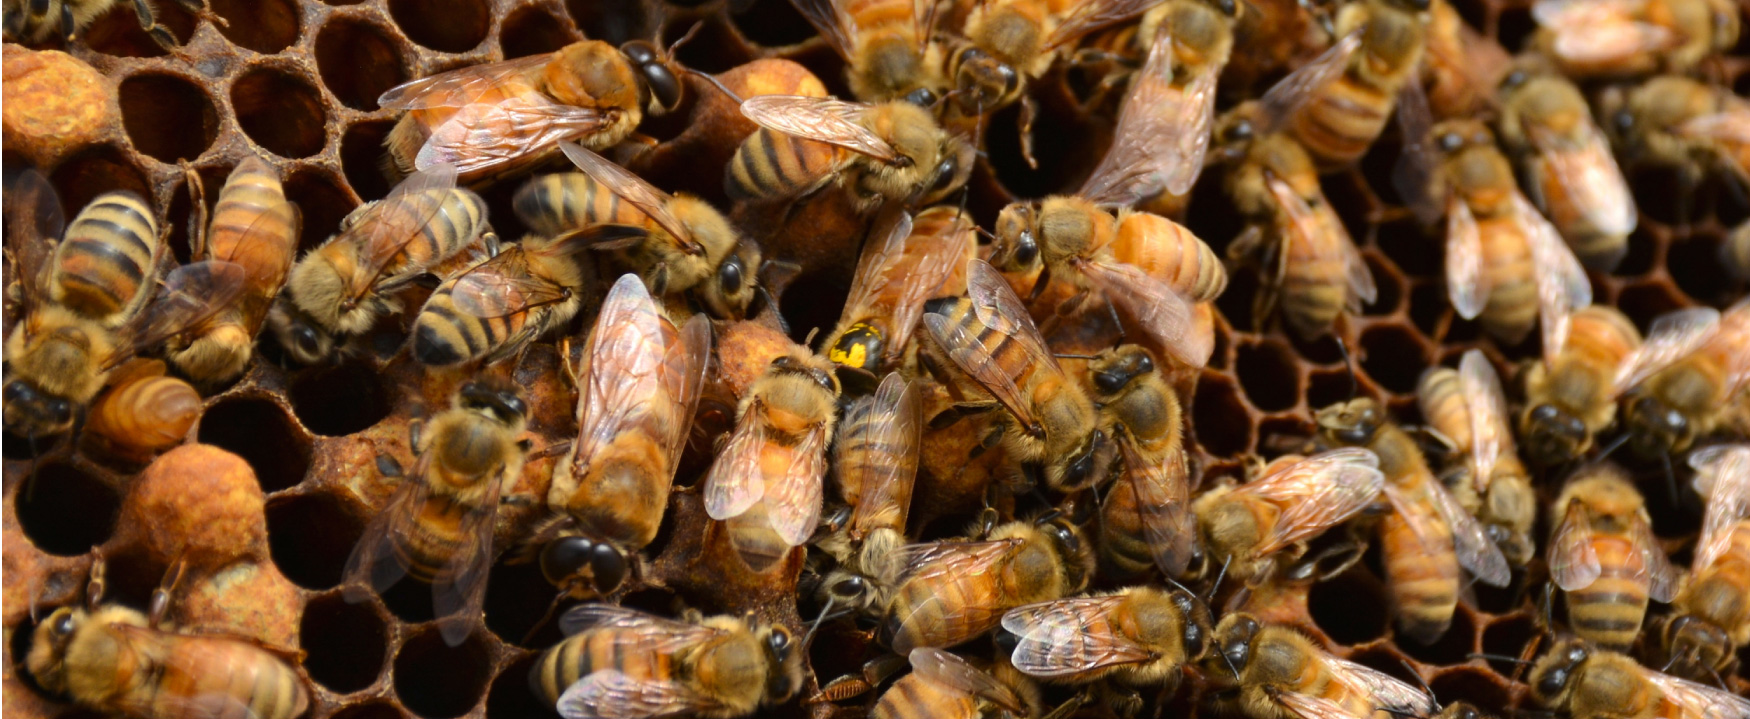 Uma fotografia mostra um close-up de uma estrutura em forma de favo de mel coberta por abelhas.